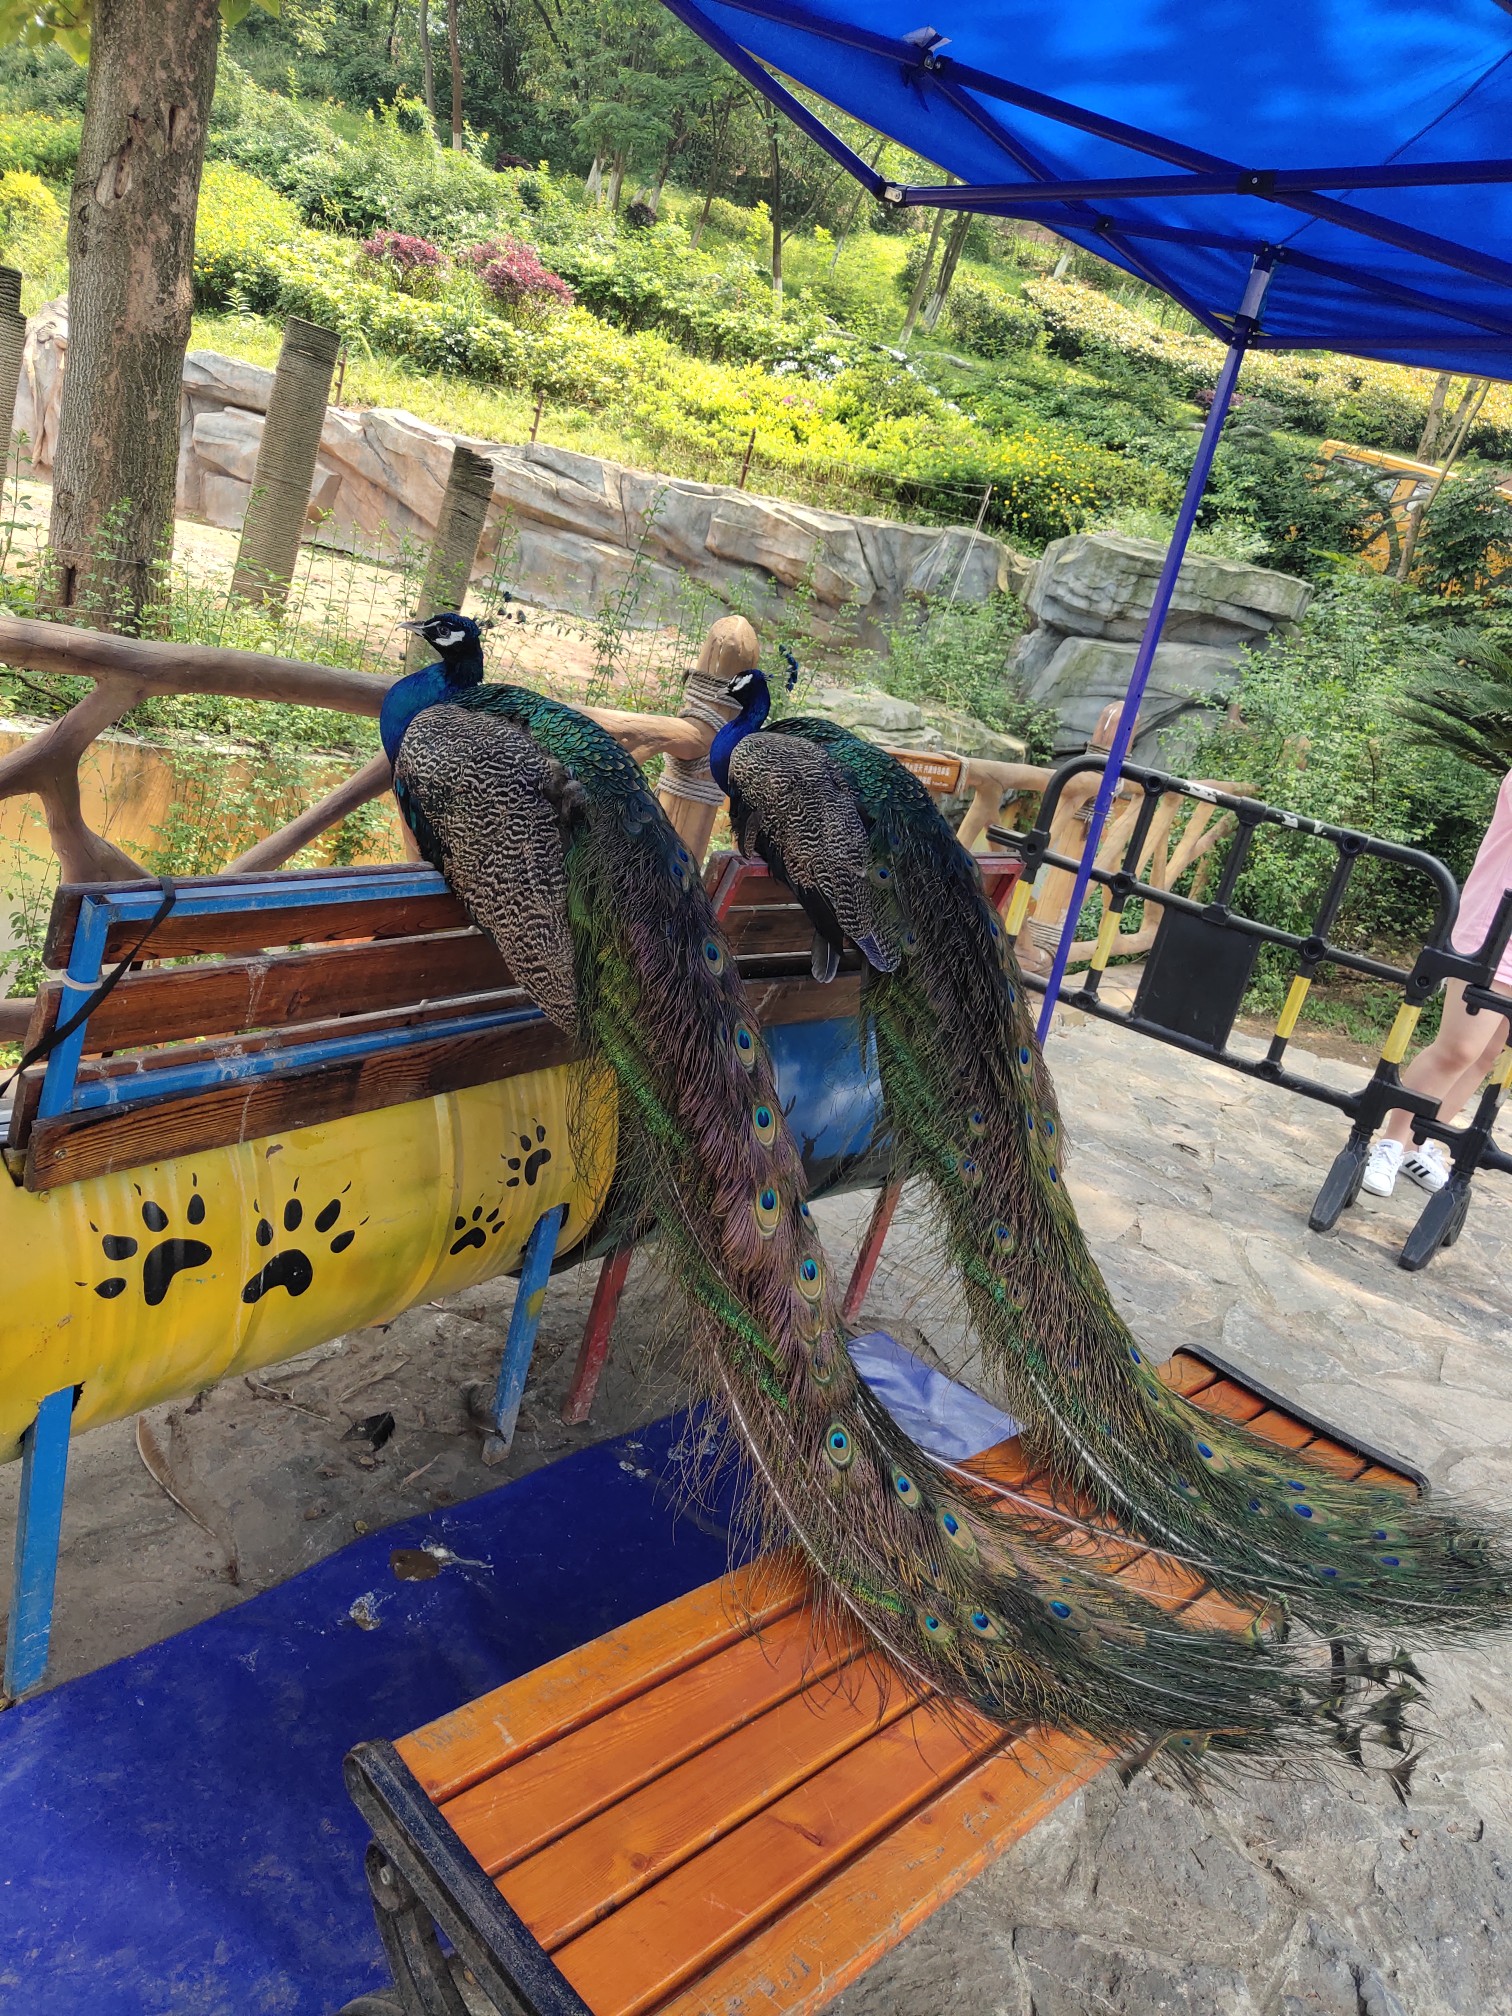 乐和乐都野生动物园-1,永川旅游攻略 - 马蜂窝